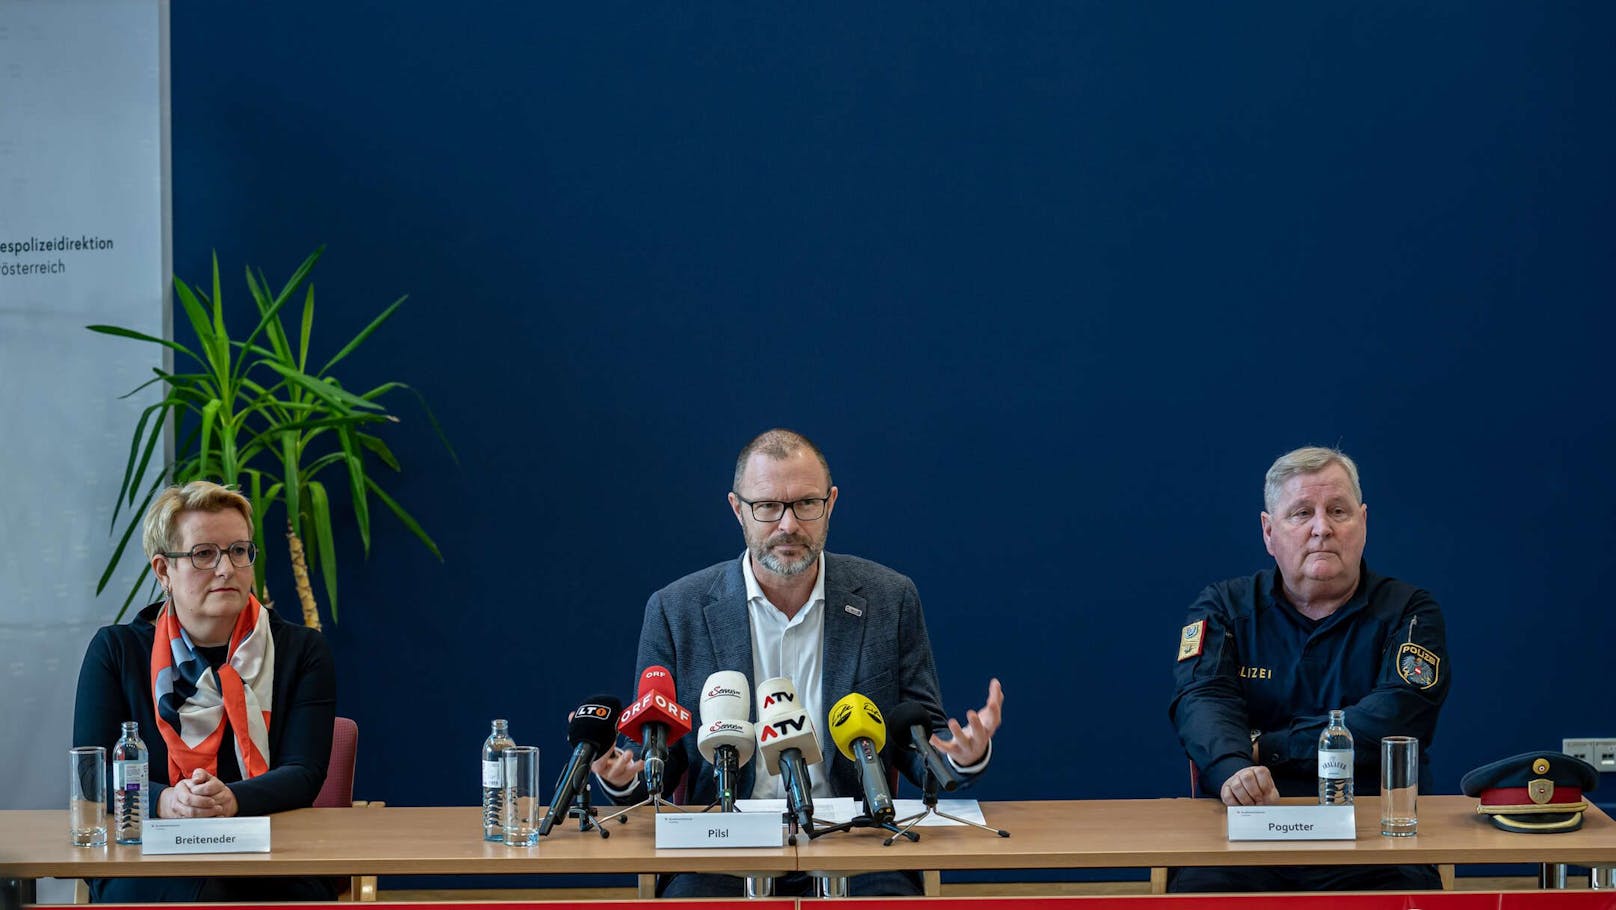 Staatsanwältin Ulrike Breiteneder, Landespolizeidirektor Andreas Pilsl und Stadtpolizeikommandant Karl Pogutter (v.l.) informierten die Medien.